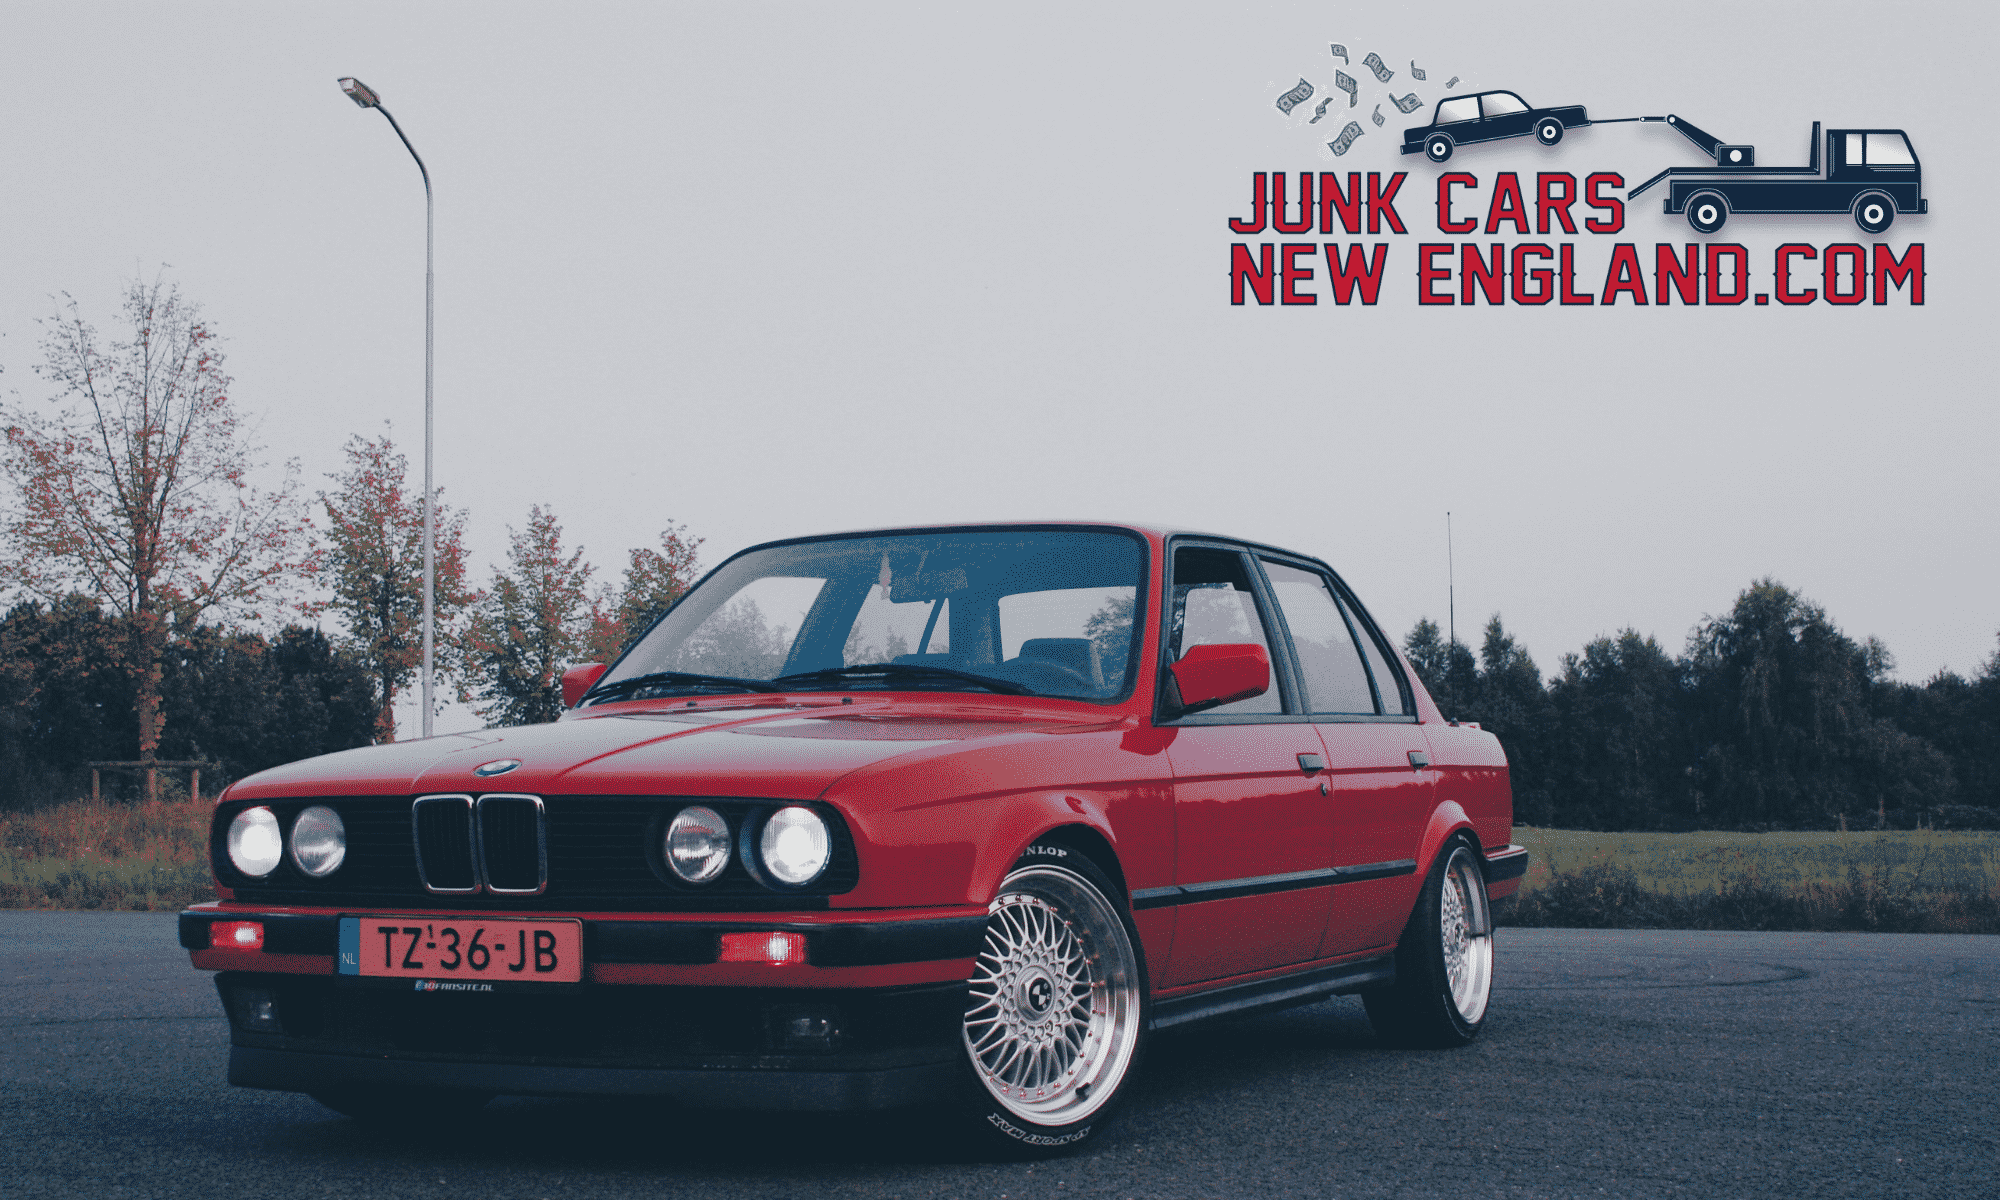 BMW-Junk-Car-Sales